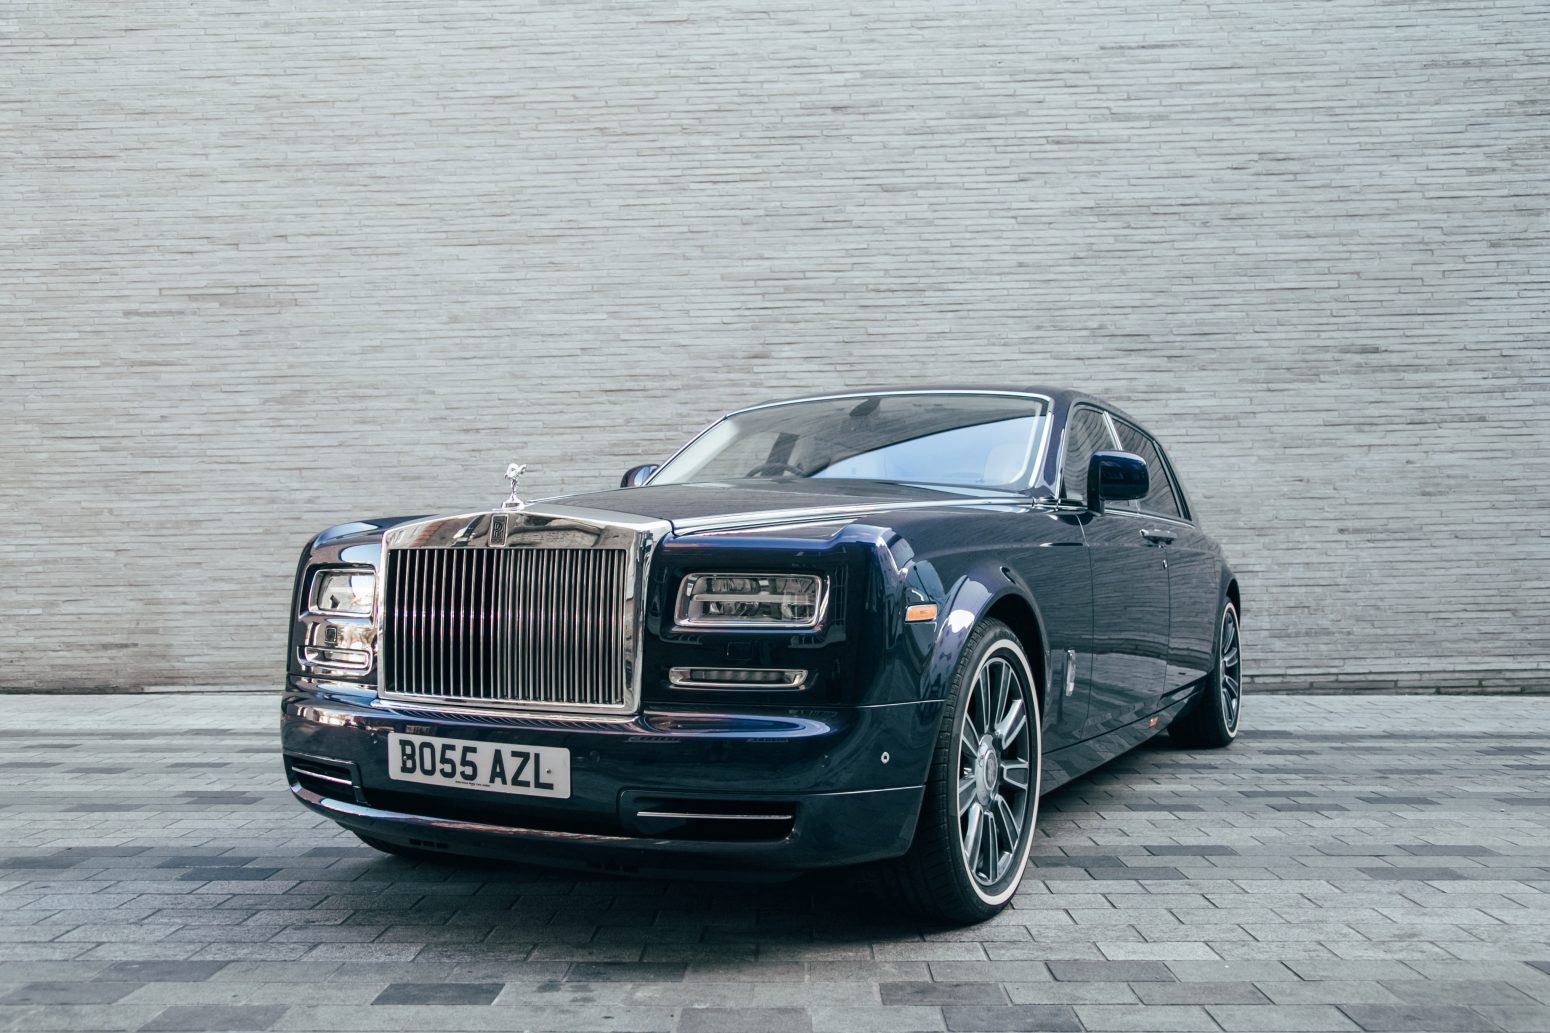 The Rolls-Royce Phantom Wedding Car